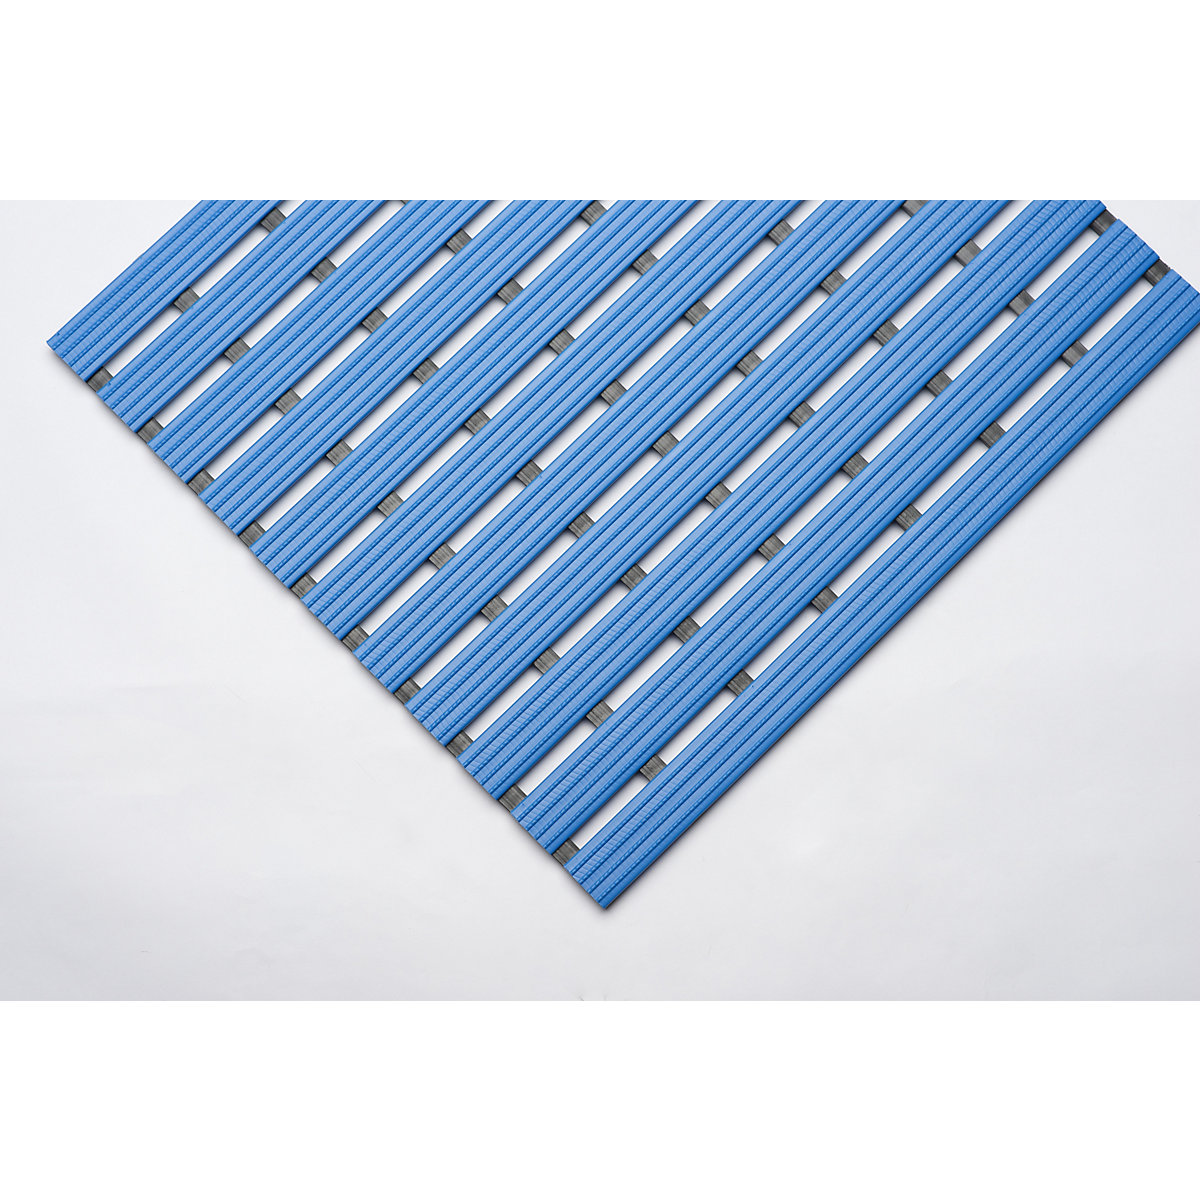 PVC-profilú szőnyeg, folyóméterenként, csúszásmentes futófelület kemény PVC-ből, szélesség 800 mm, kék-11